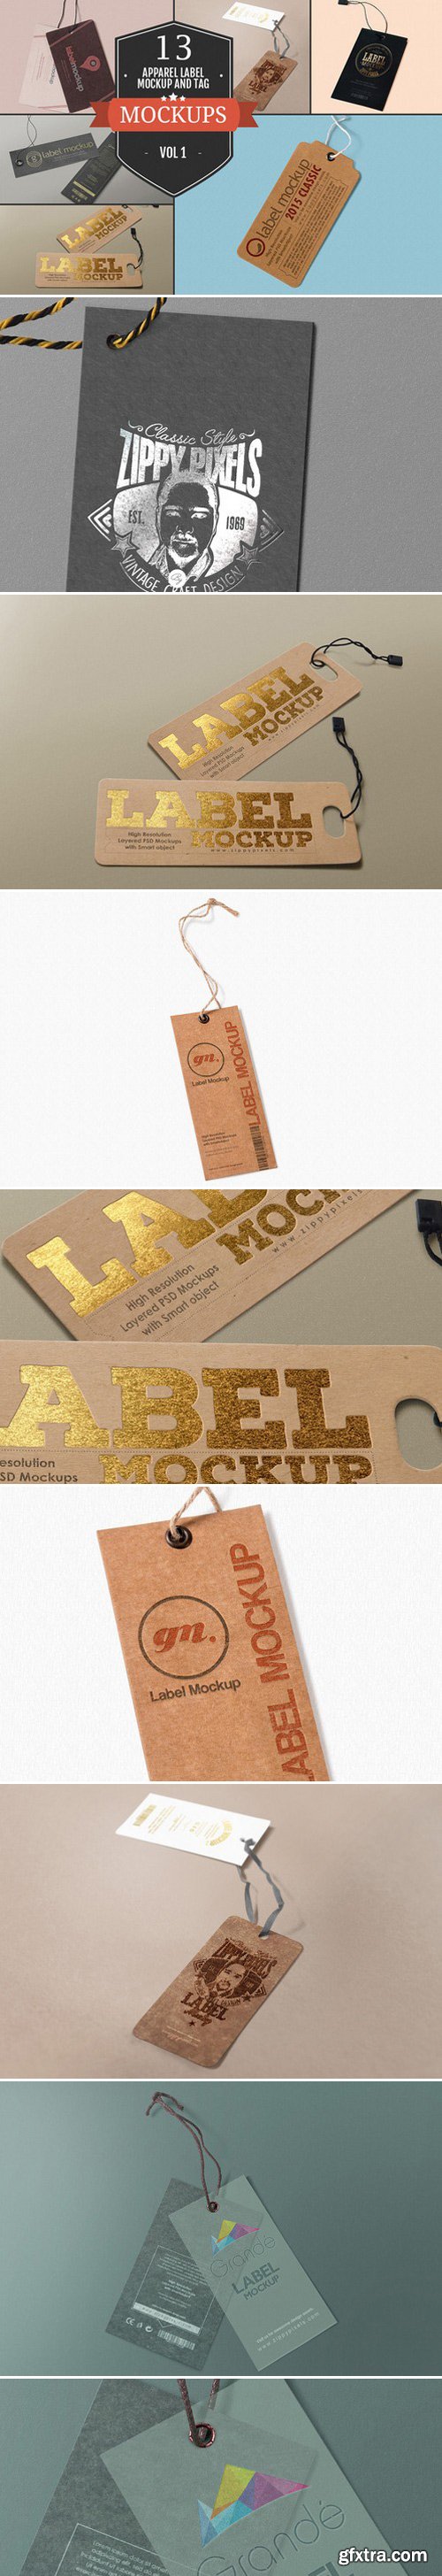 CM - Apparel Label & Tag Mockups Vol. 1 377050